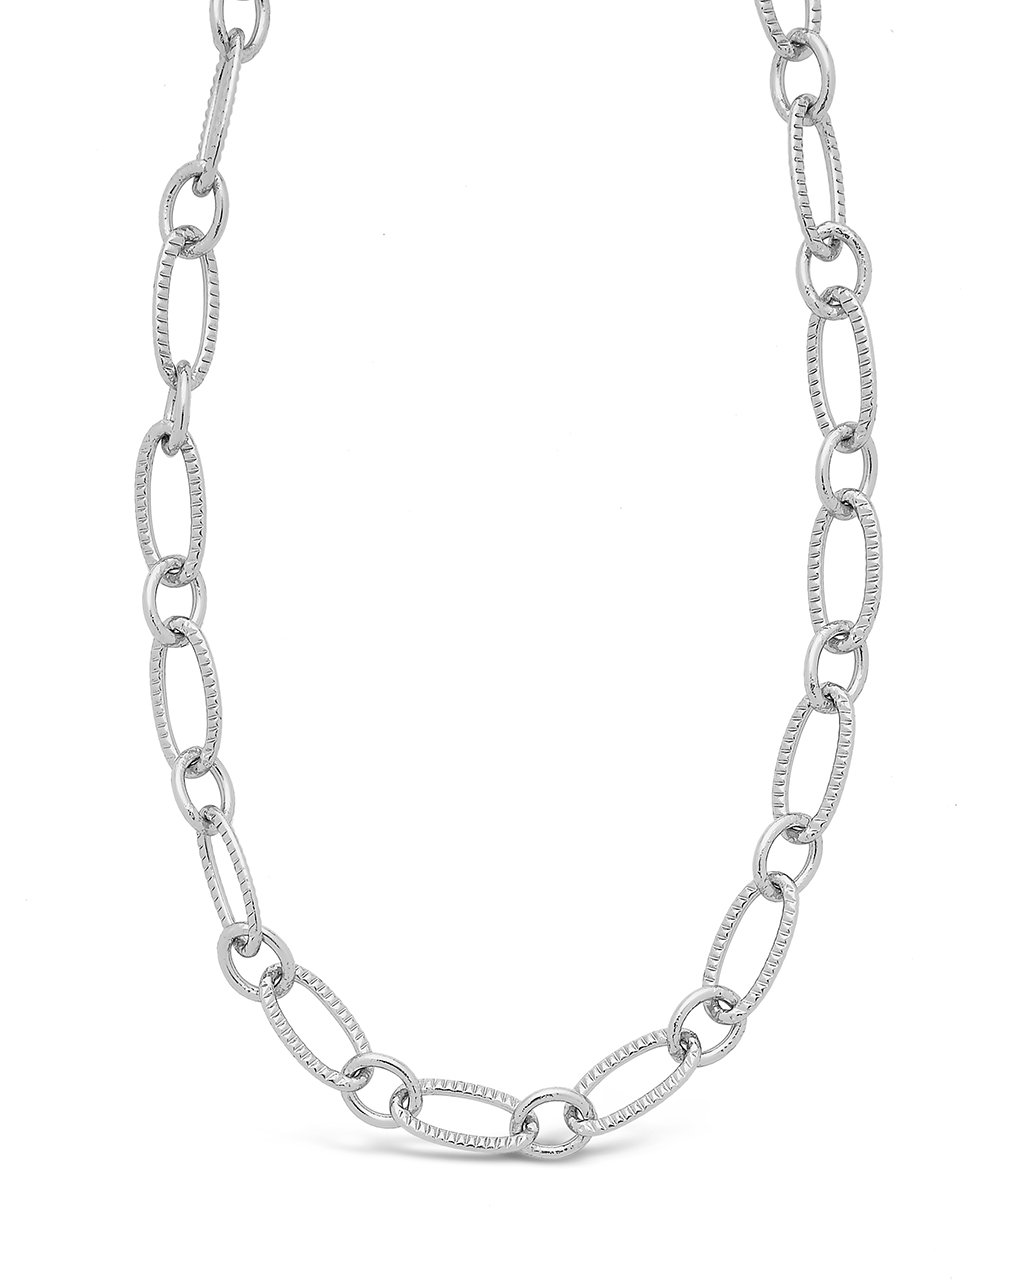 Adjustable Polished Gold Oval Link Chain Necklace – KennethJayLane.com